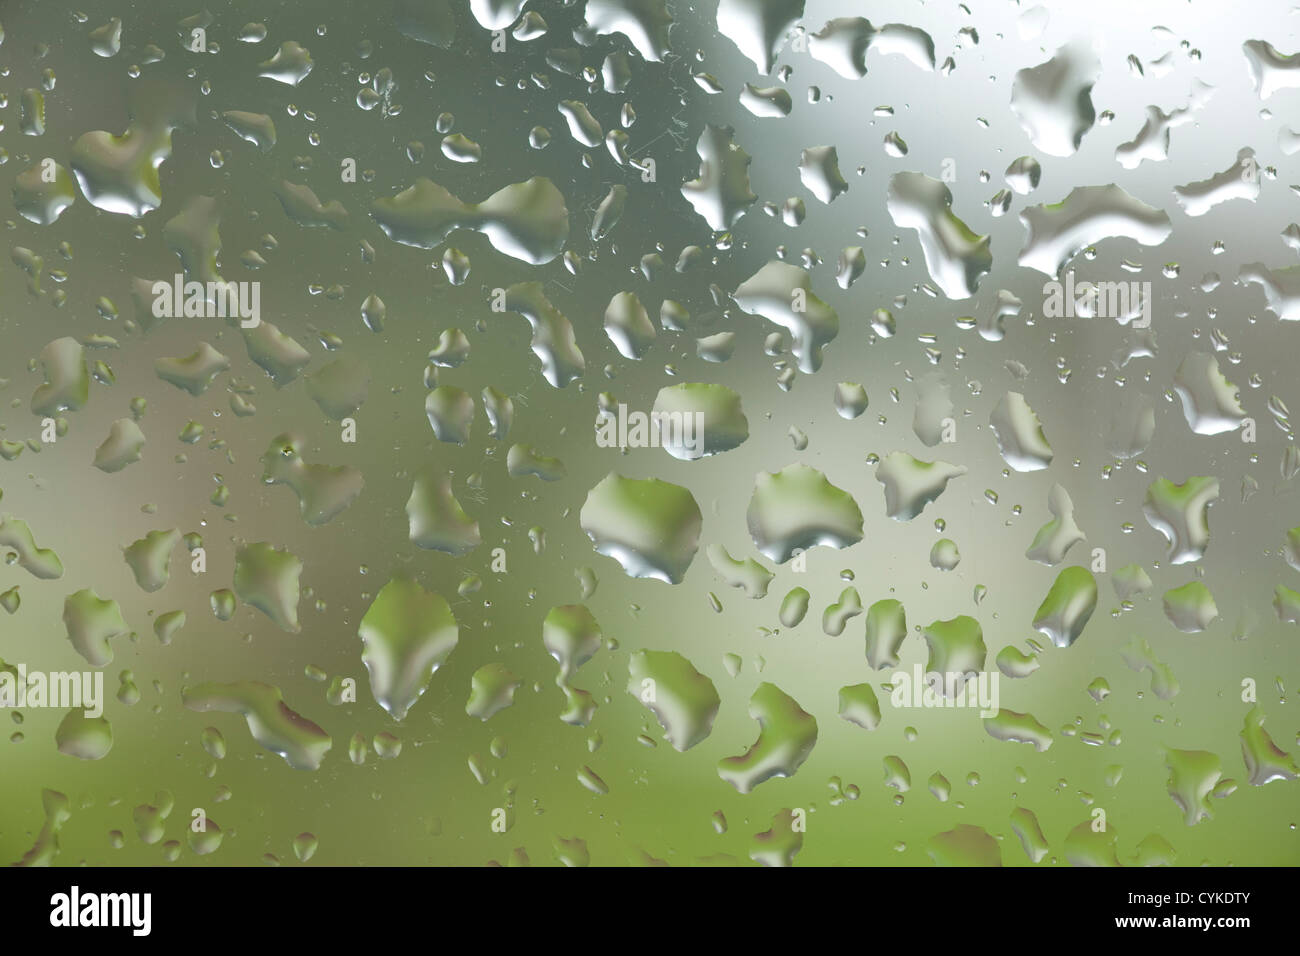 WA05260-00...WASHINGTON - les gouttes de pluie sur la fenêtre. Banque D'Images